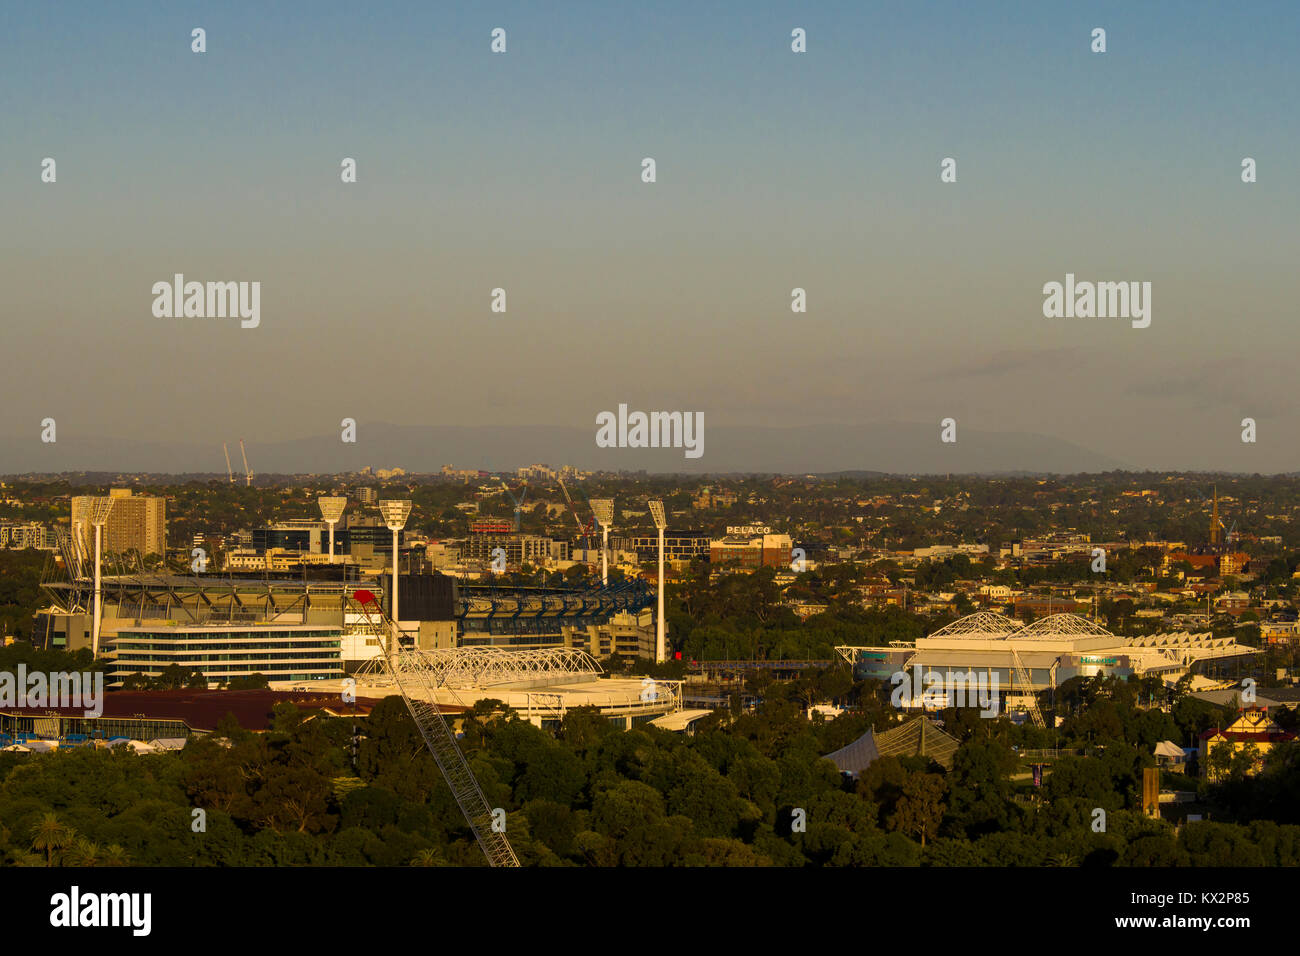 Sunsetting sul campo da Cricket di Melbourne e i principali campi da tennis per gli Australian Open a Melbourne Park, Victoria, Australia Foto Stock